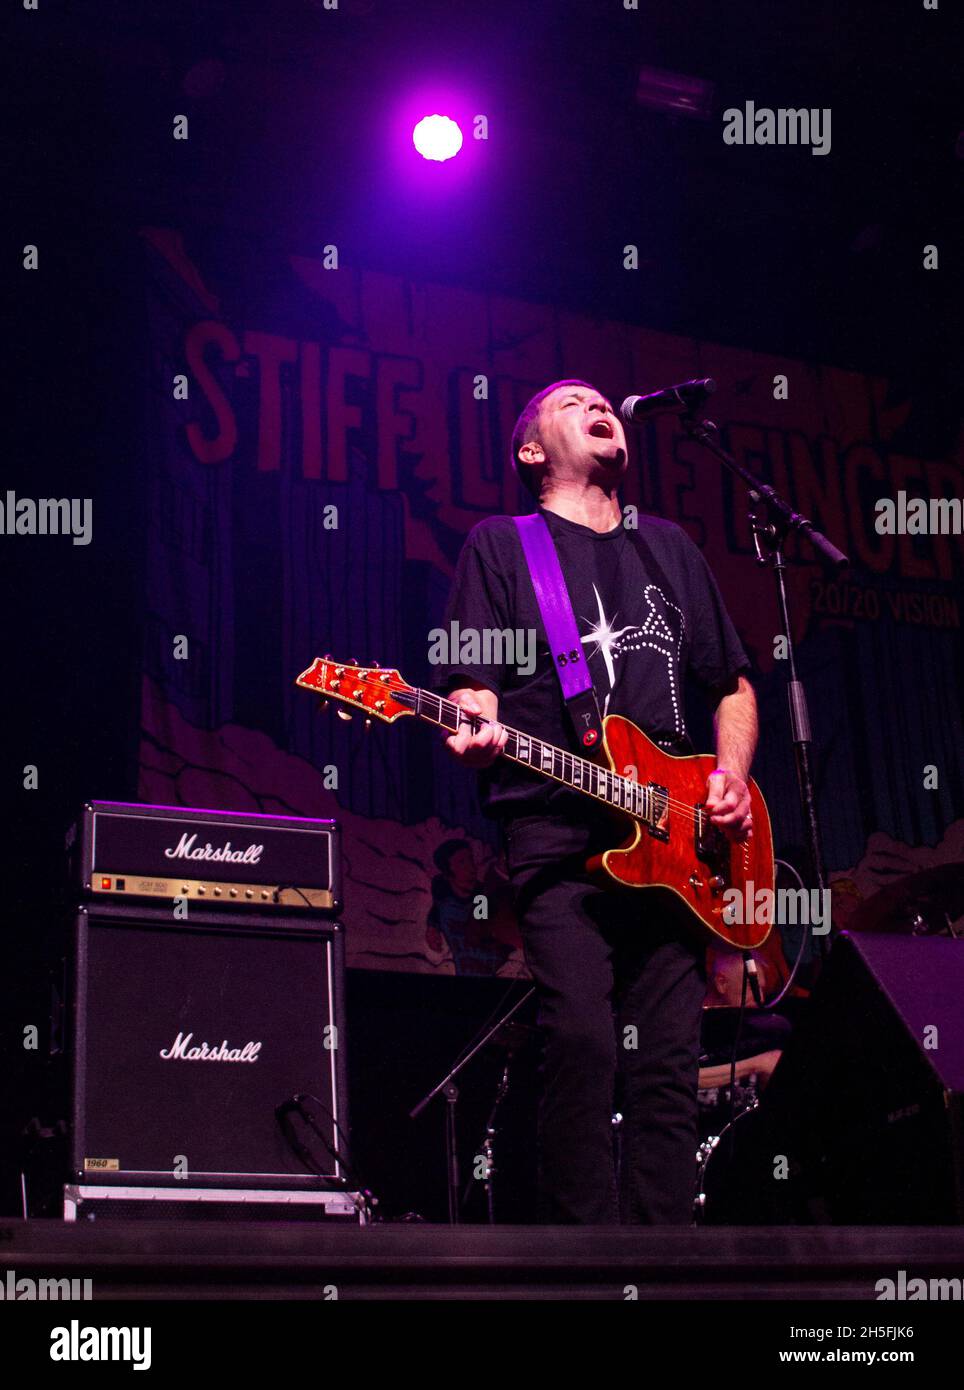 La band punk rock dell'Irlanda del Nord ha fatto stiff little Fingers al Broken Bones Festival di Helsinki, Finlandia, 6.11.2021. Ian McCallum, chitarrista delle piccole dita rigide. Foto Stock